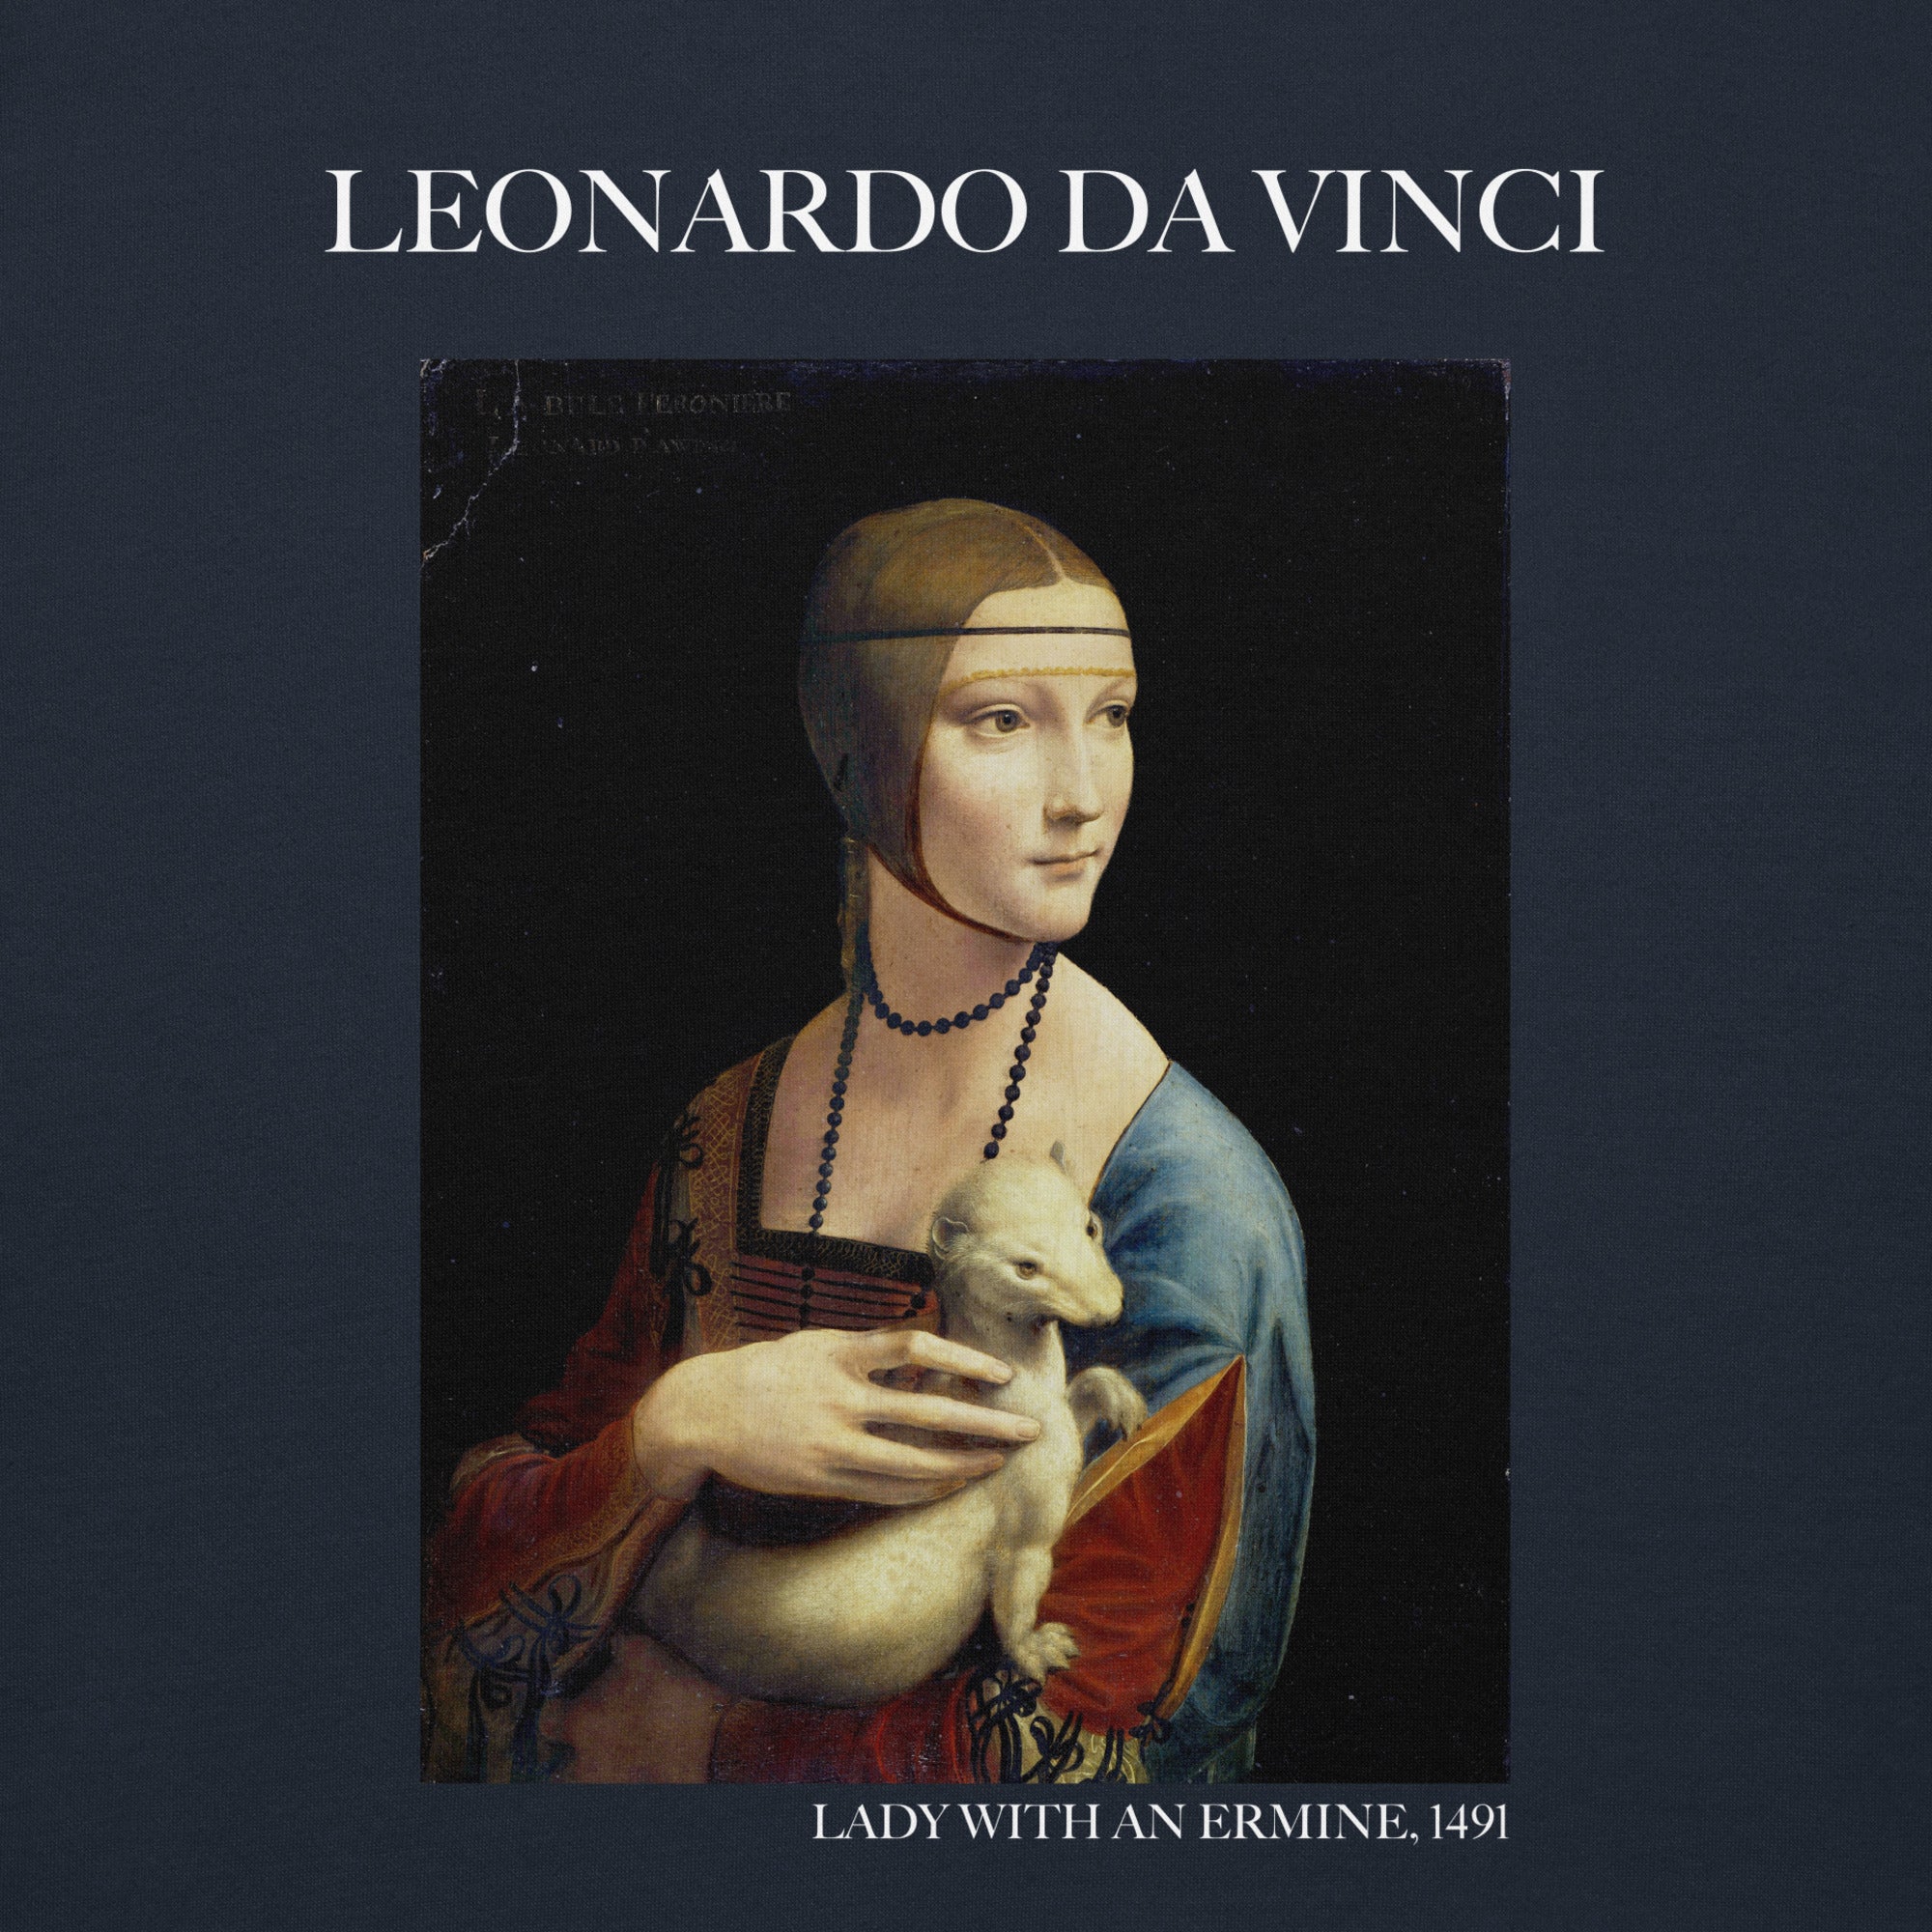 Kapuzenpullover mit berühmtem Gemälde „Die Dame mit dem Hermelin“ von Leonardo da Vinci | Unisex-Kapuzenpullover mit Premium-Kunstmotiv